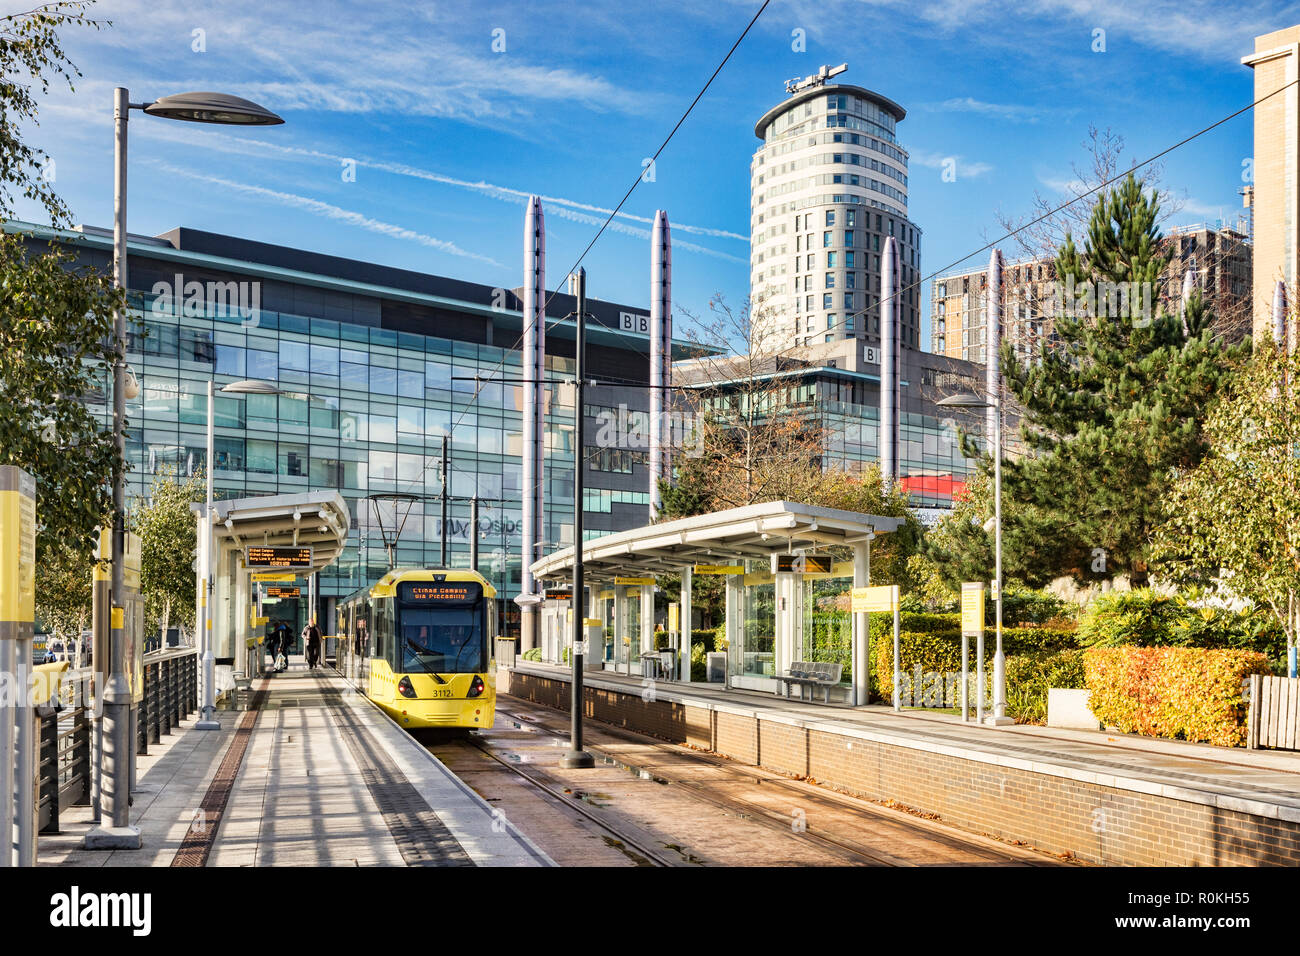 2 novembre 2018 : Manchester, UK - tramway Metrolink à Media City UK Station sur une journée ensoleillée d'automne avec ciel bleu. Banque D'Images